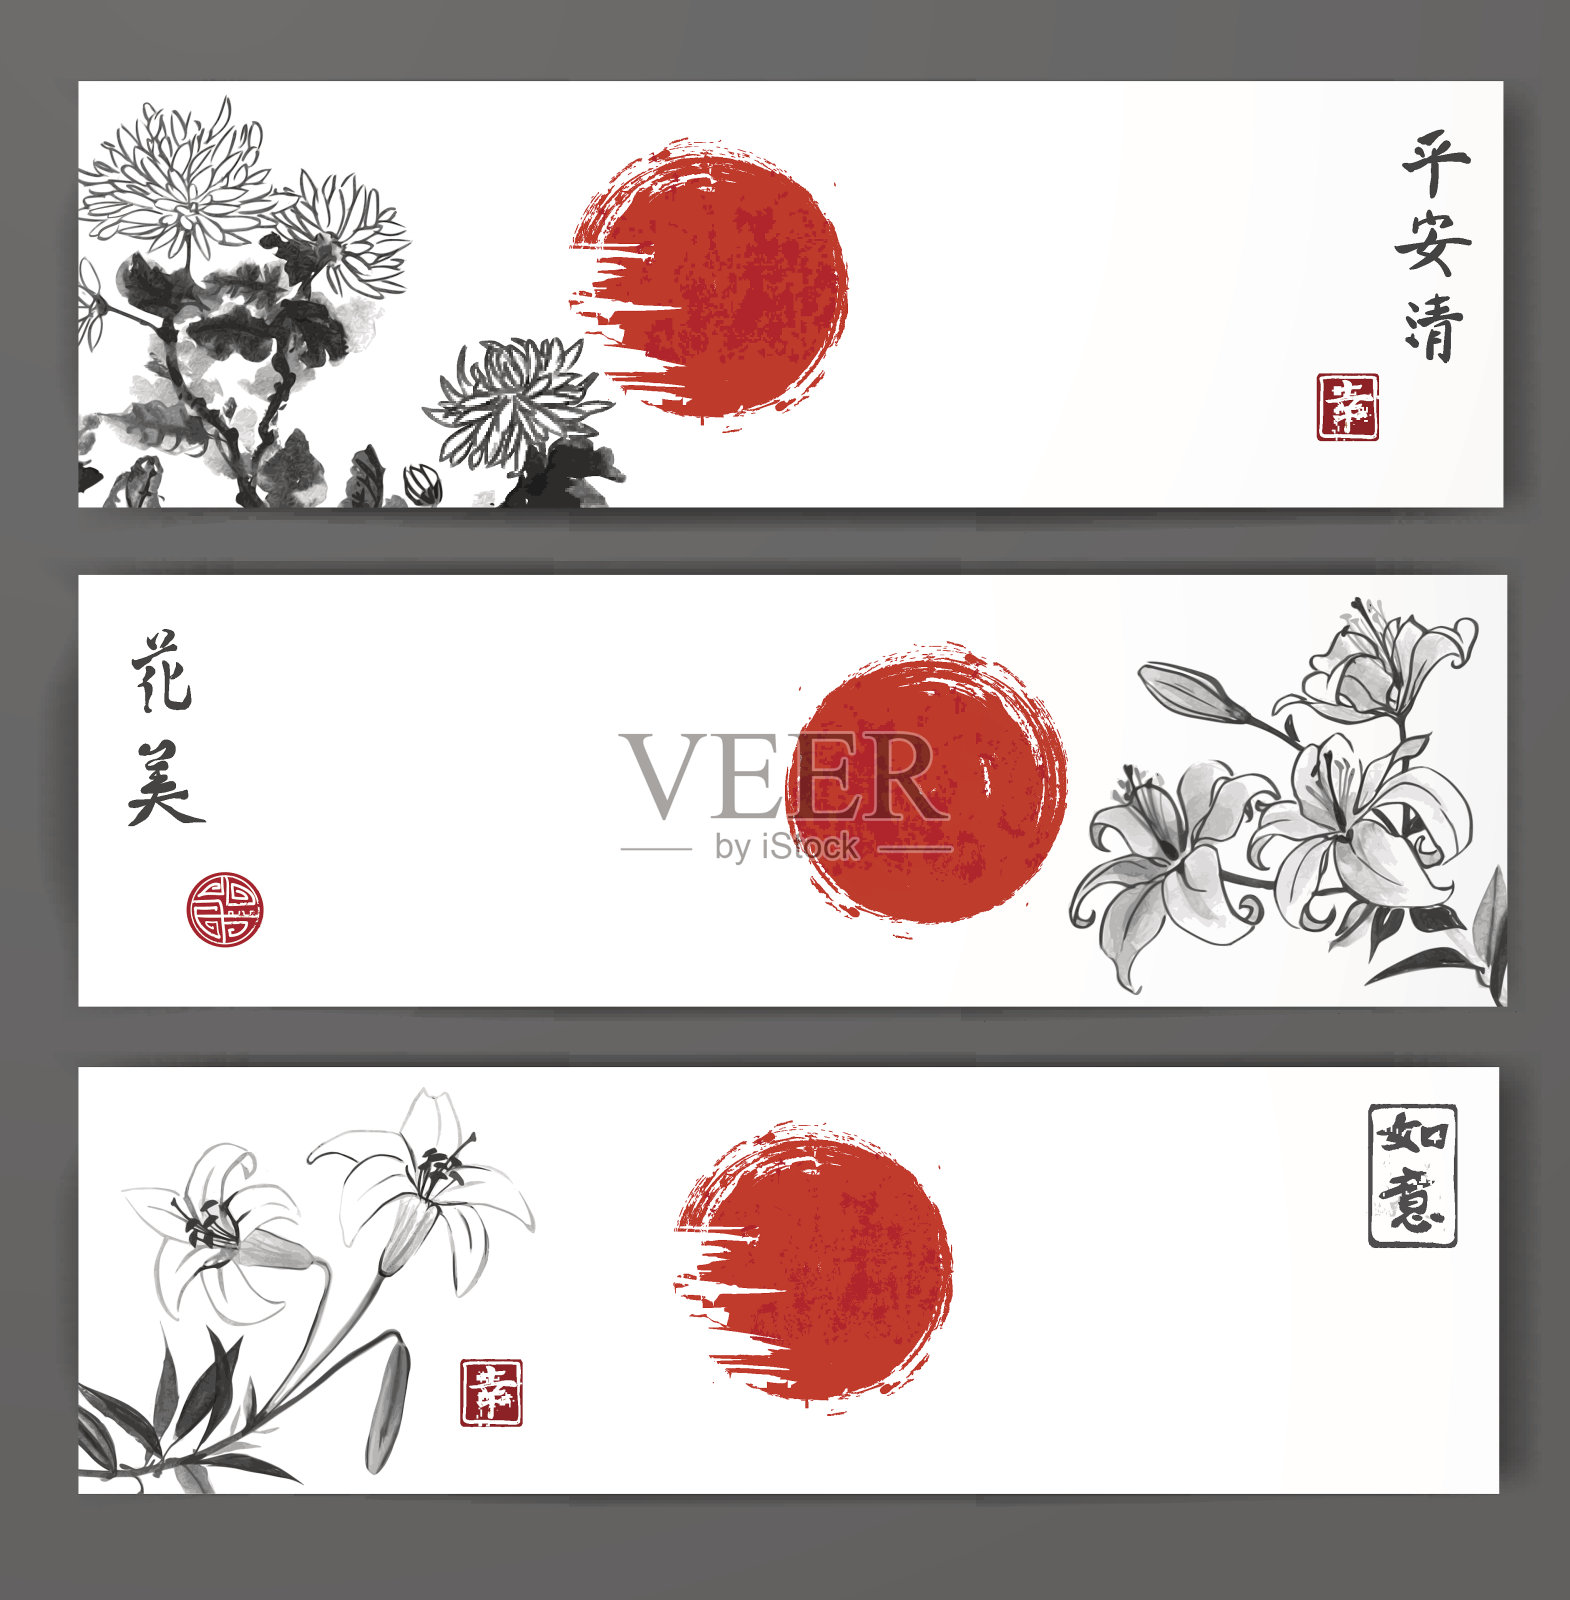 三幅绘有菊花和百合的横幅设计模板素材